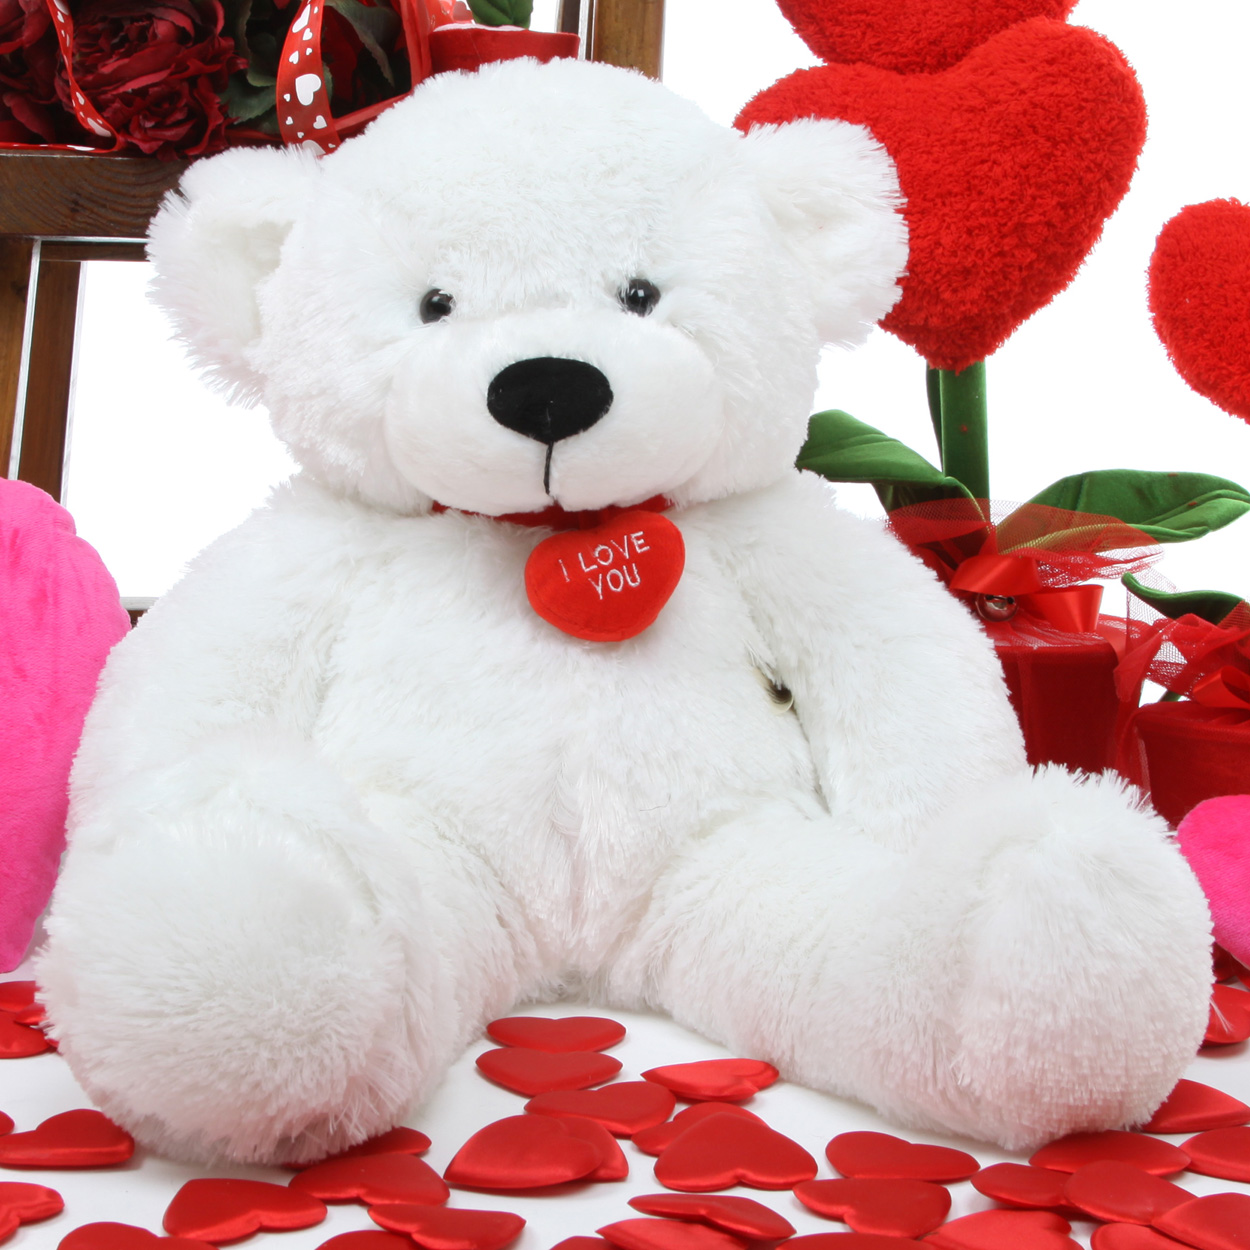 52 Cute Teddy Bears You Will Want To Hug - SparkyHub